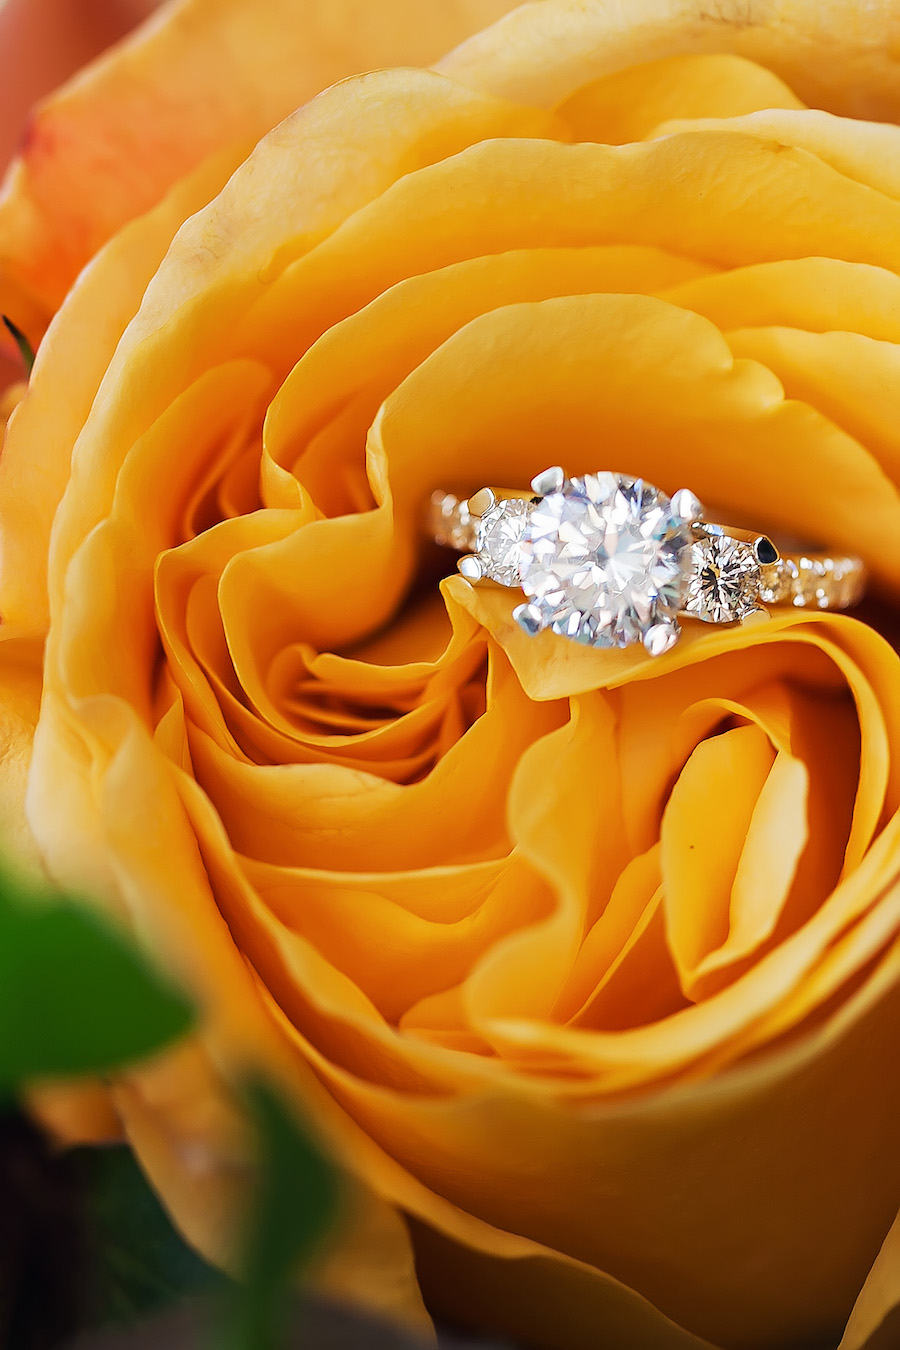 Tampa Bay Wedding Jeweler International Diamond Source Engagement Ring